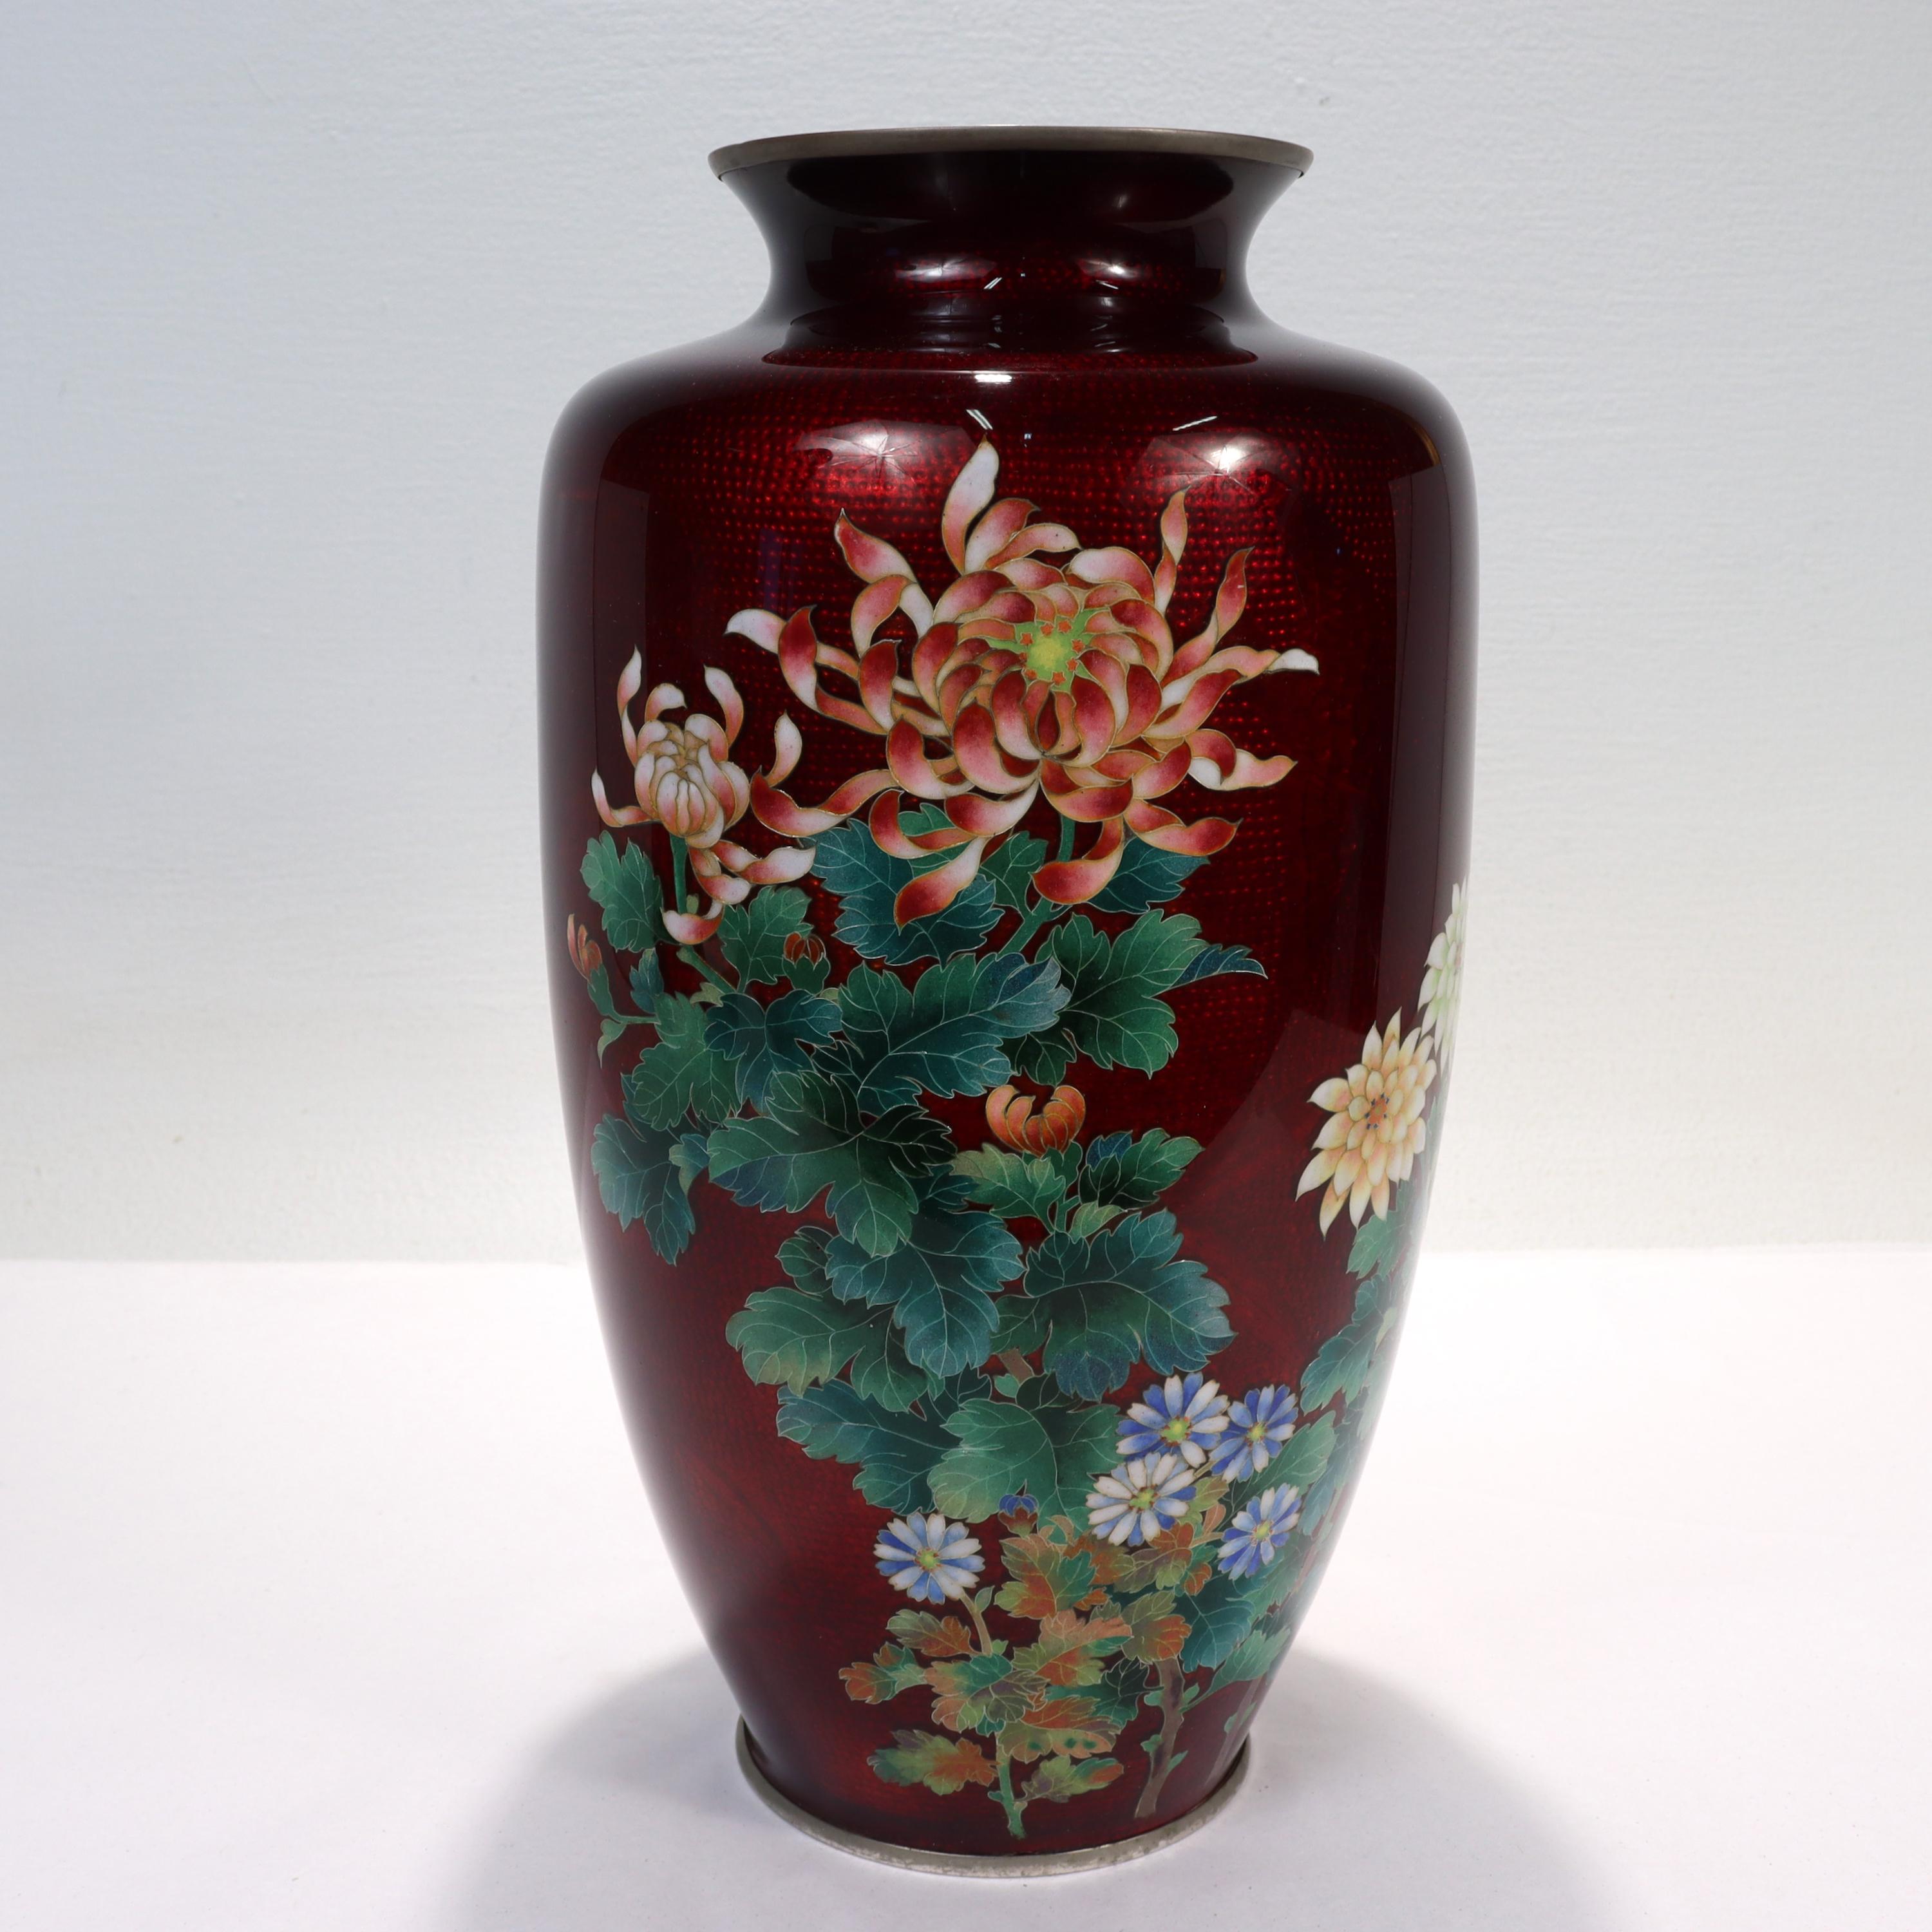 Eine schöne antike japanische Emaille-Vase.

Mit verdrahteten Cloisonné-Blüten auf rotem Ginbari-Grund.

Bei der Ginbari-Technik (ähnlich wie bei der Guilloche-Emaillierung) wird transparente Emaille über eine gemusterte Metalloberfläche